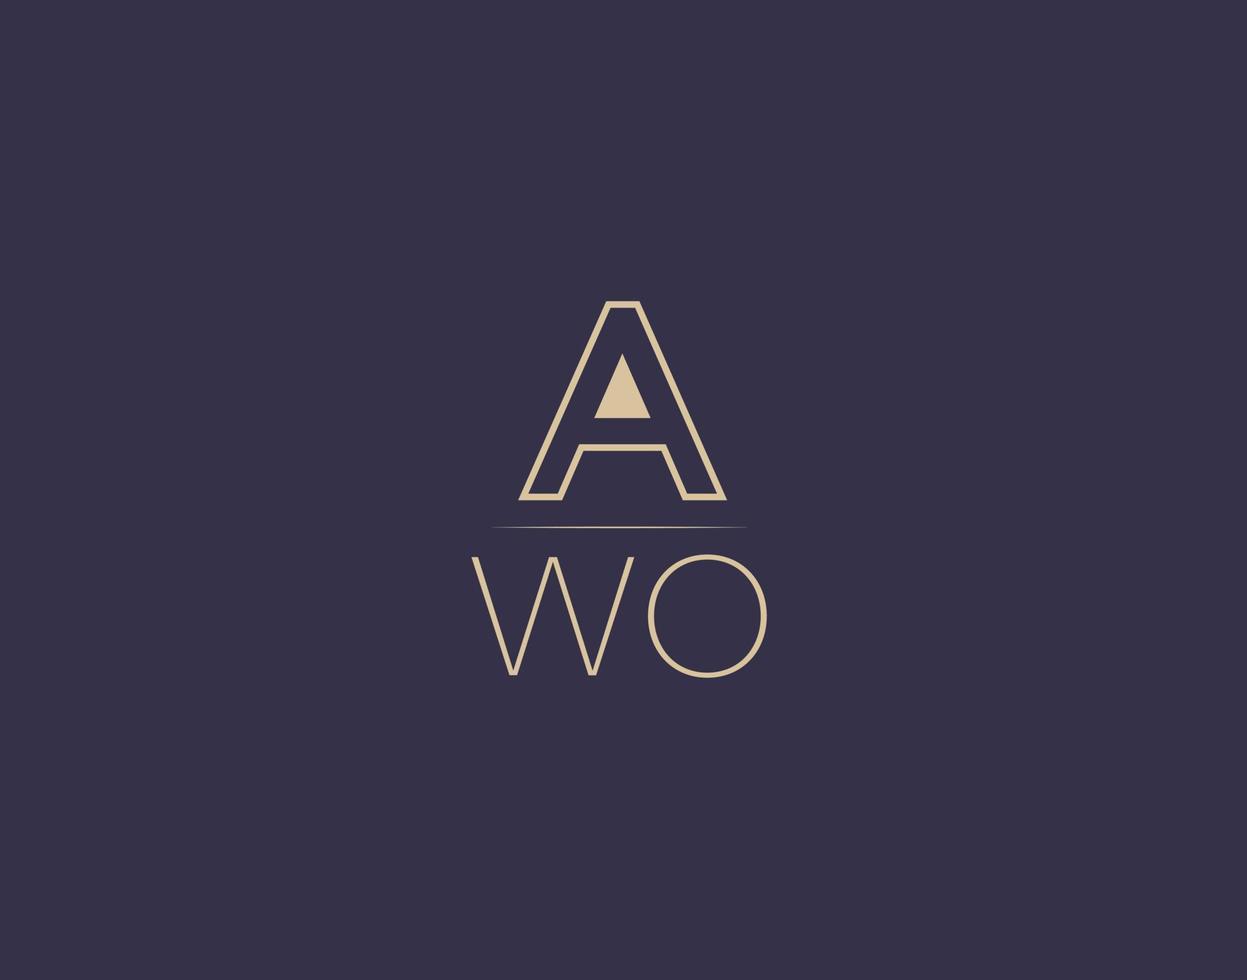 Awo Letter Logo Design moderne minimalistische Vektorbilder vektor